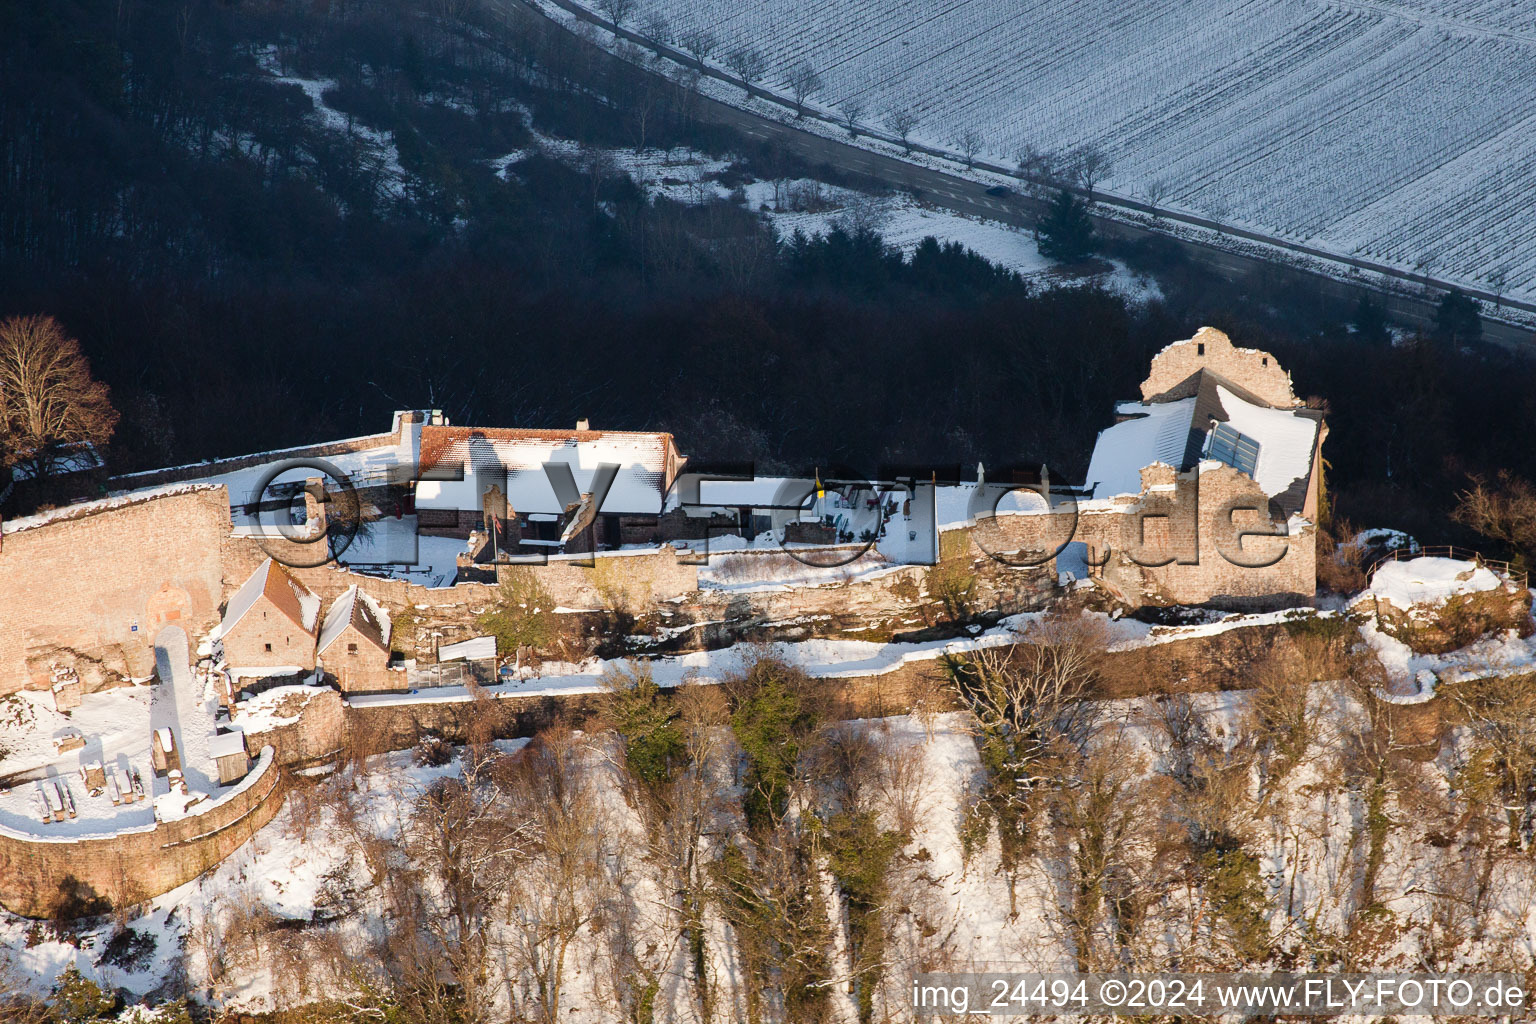 Madenbourg à Eschbach dans le département Rhénanie-Palatinat, Allemagne du point de vue du drone